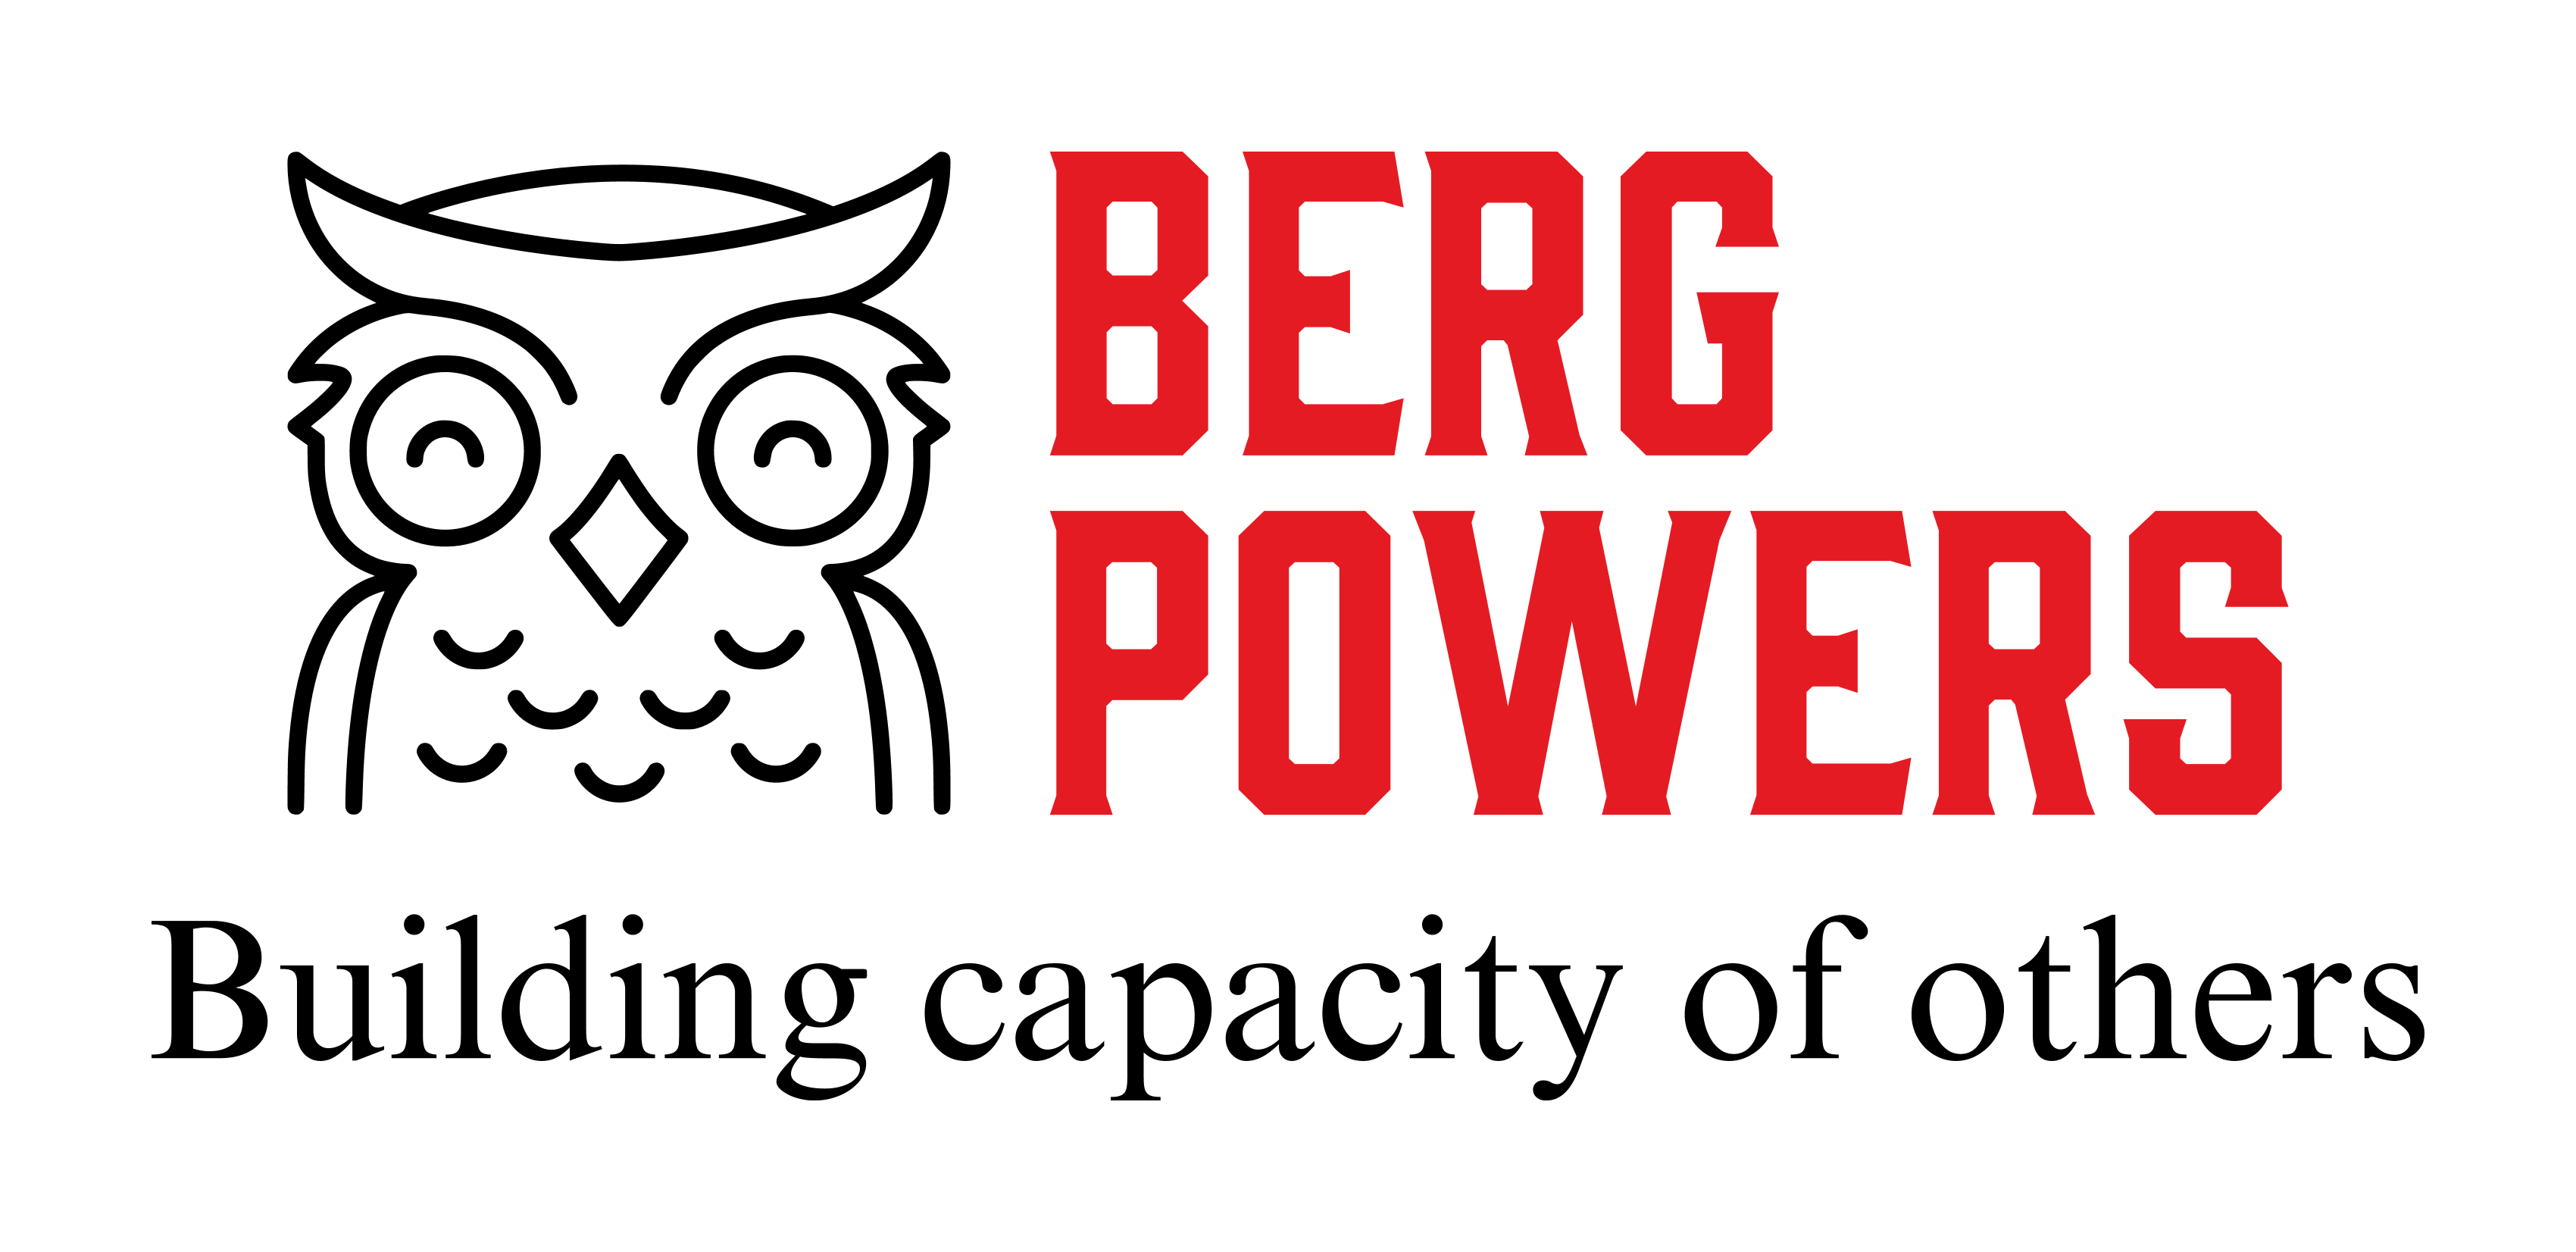 Jordan Berg Powers